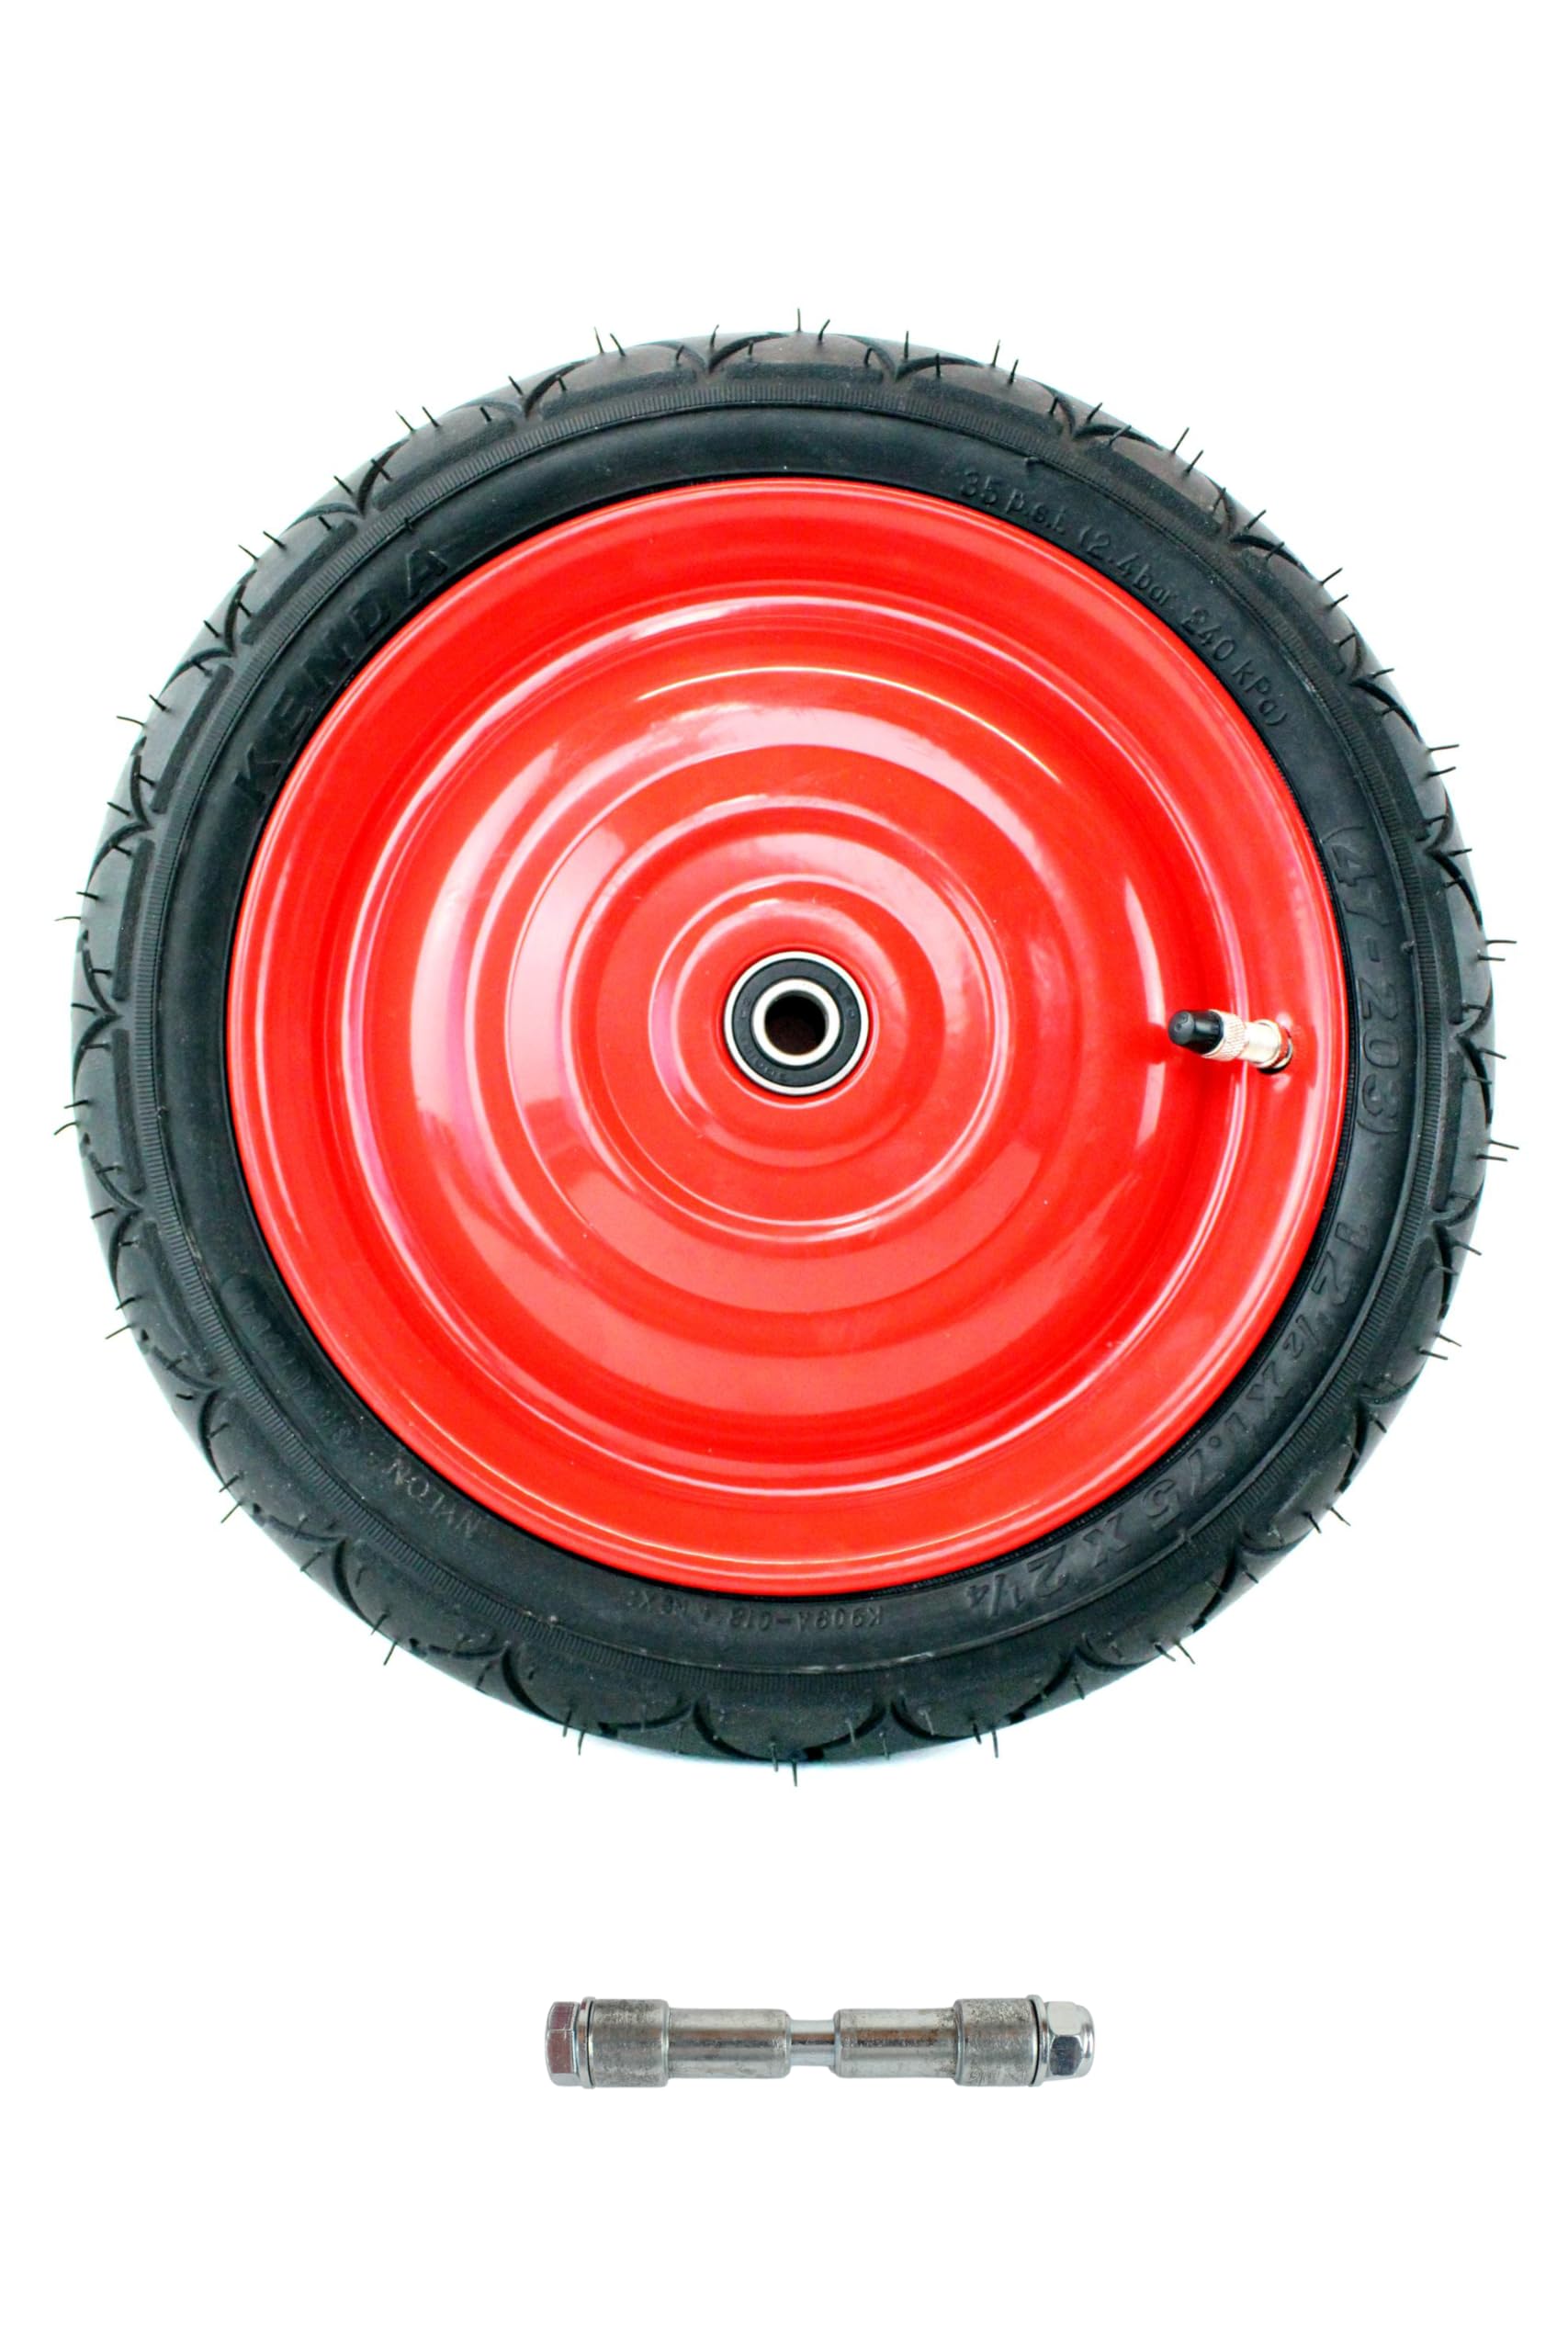 Scheibenrad, Felge 12,5 Zoll, 8mm Achse, Rot inkl. Kenda Reifen und Schlauch Fahrradventil, fertig montiert für Anhänger, DDR Handwagen, Laufrad von BISOMO